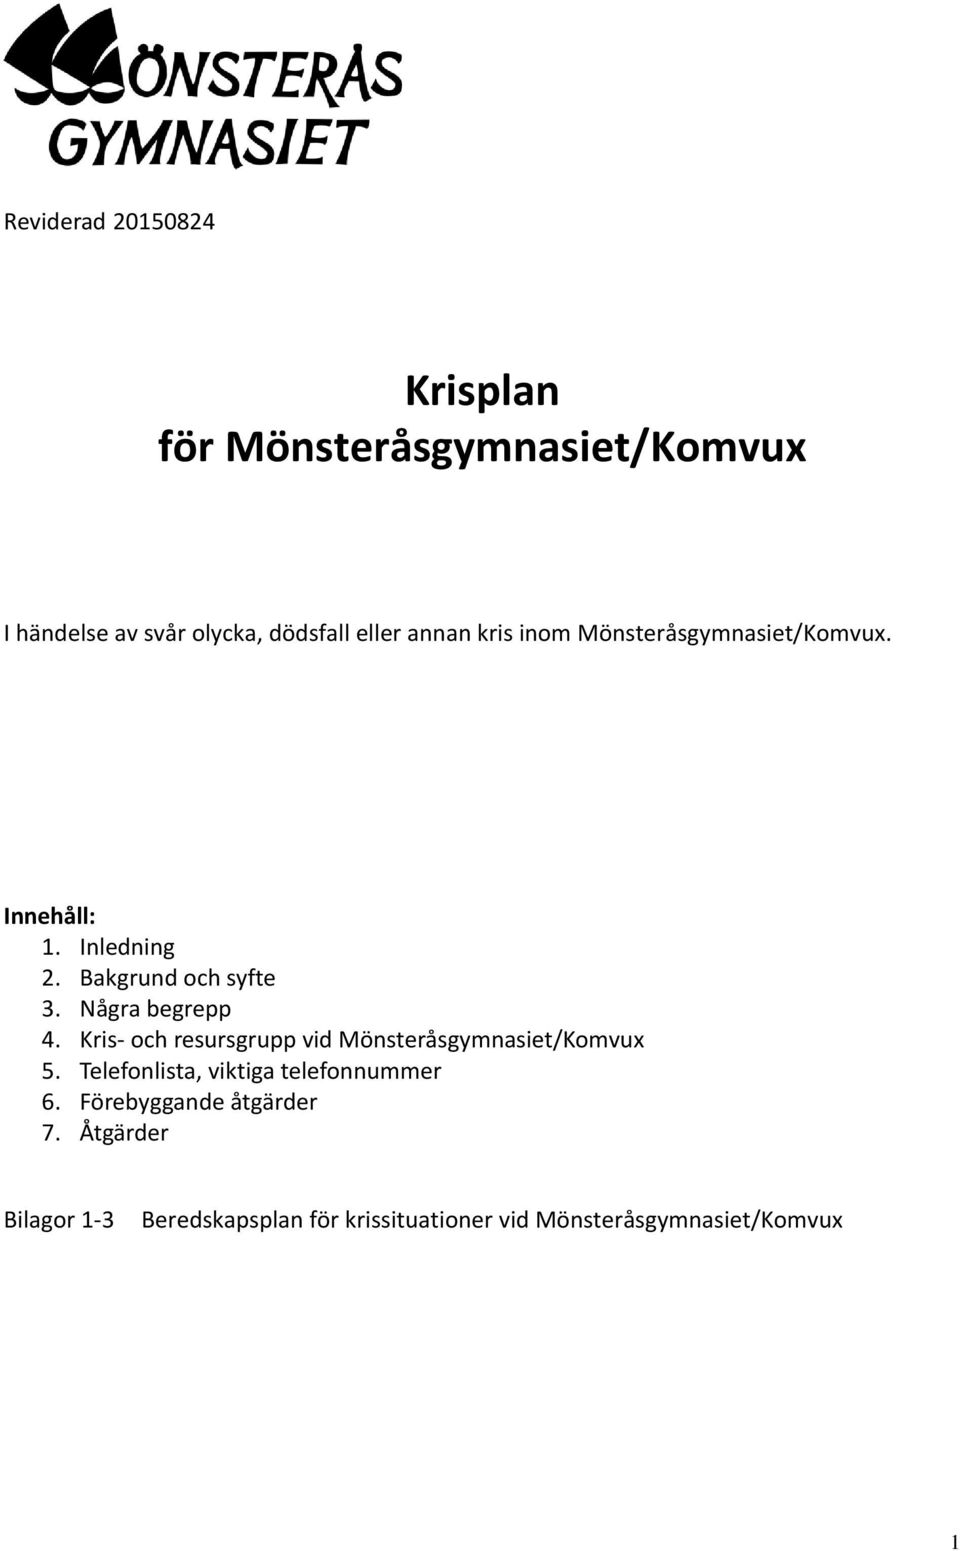 Några begrepp 4. Kris och resursgrupp vid Mönsteråsgymnasiet/Komvux 5.